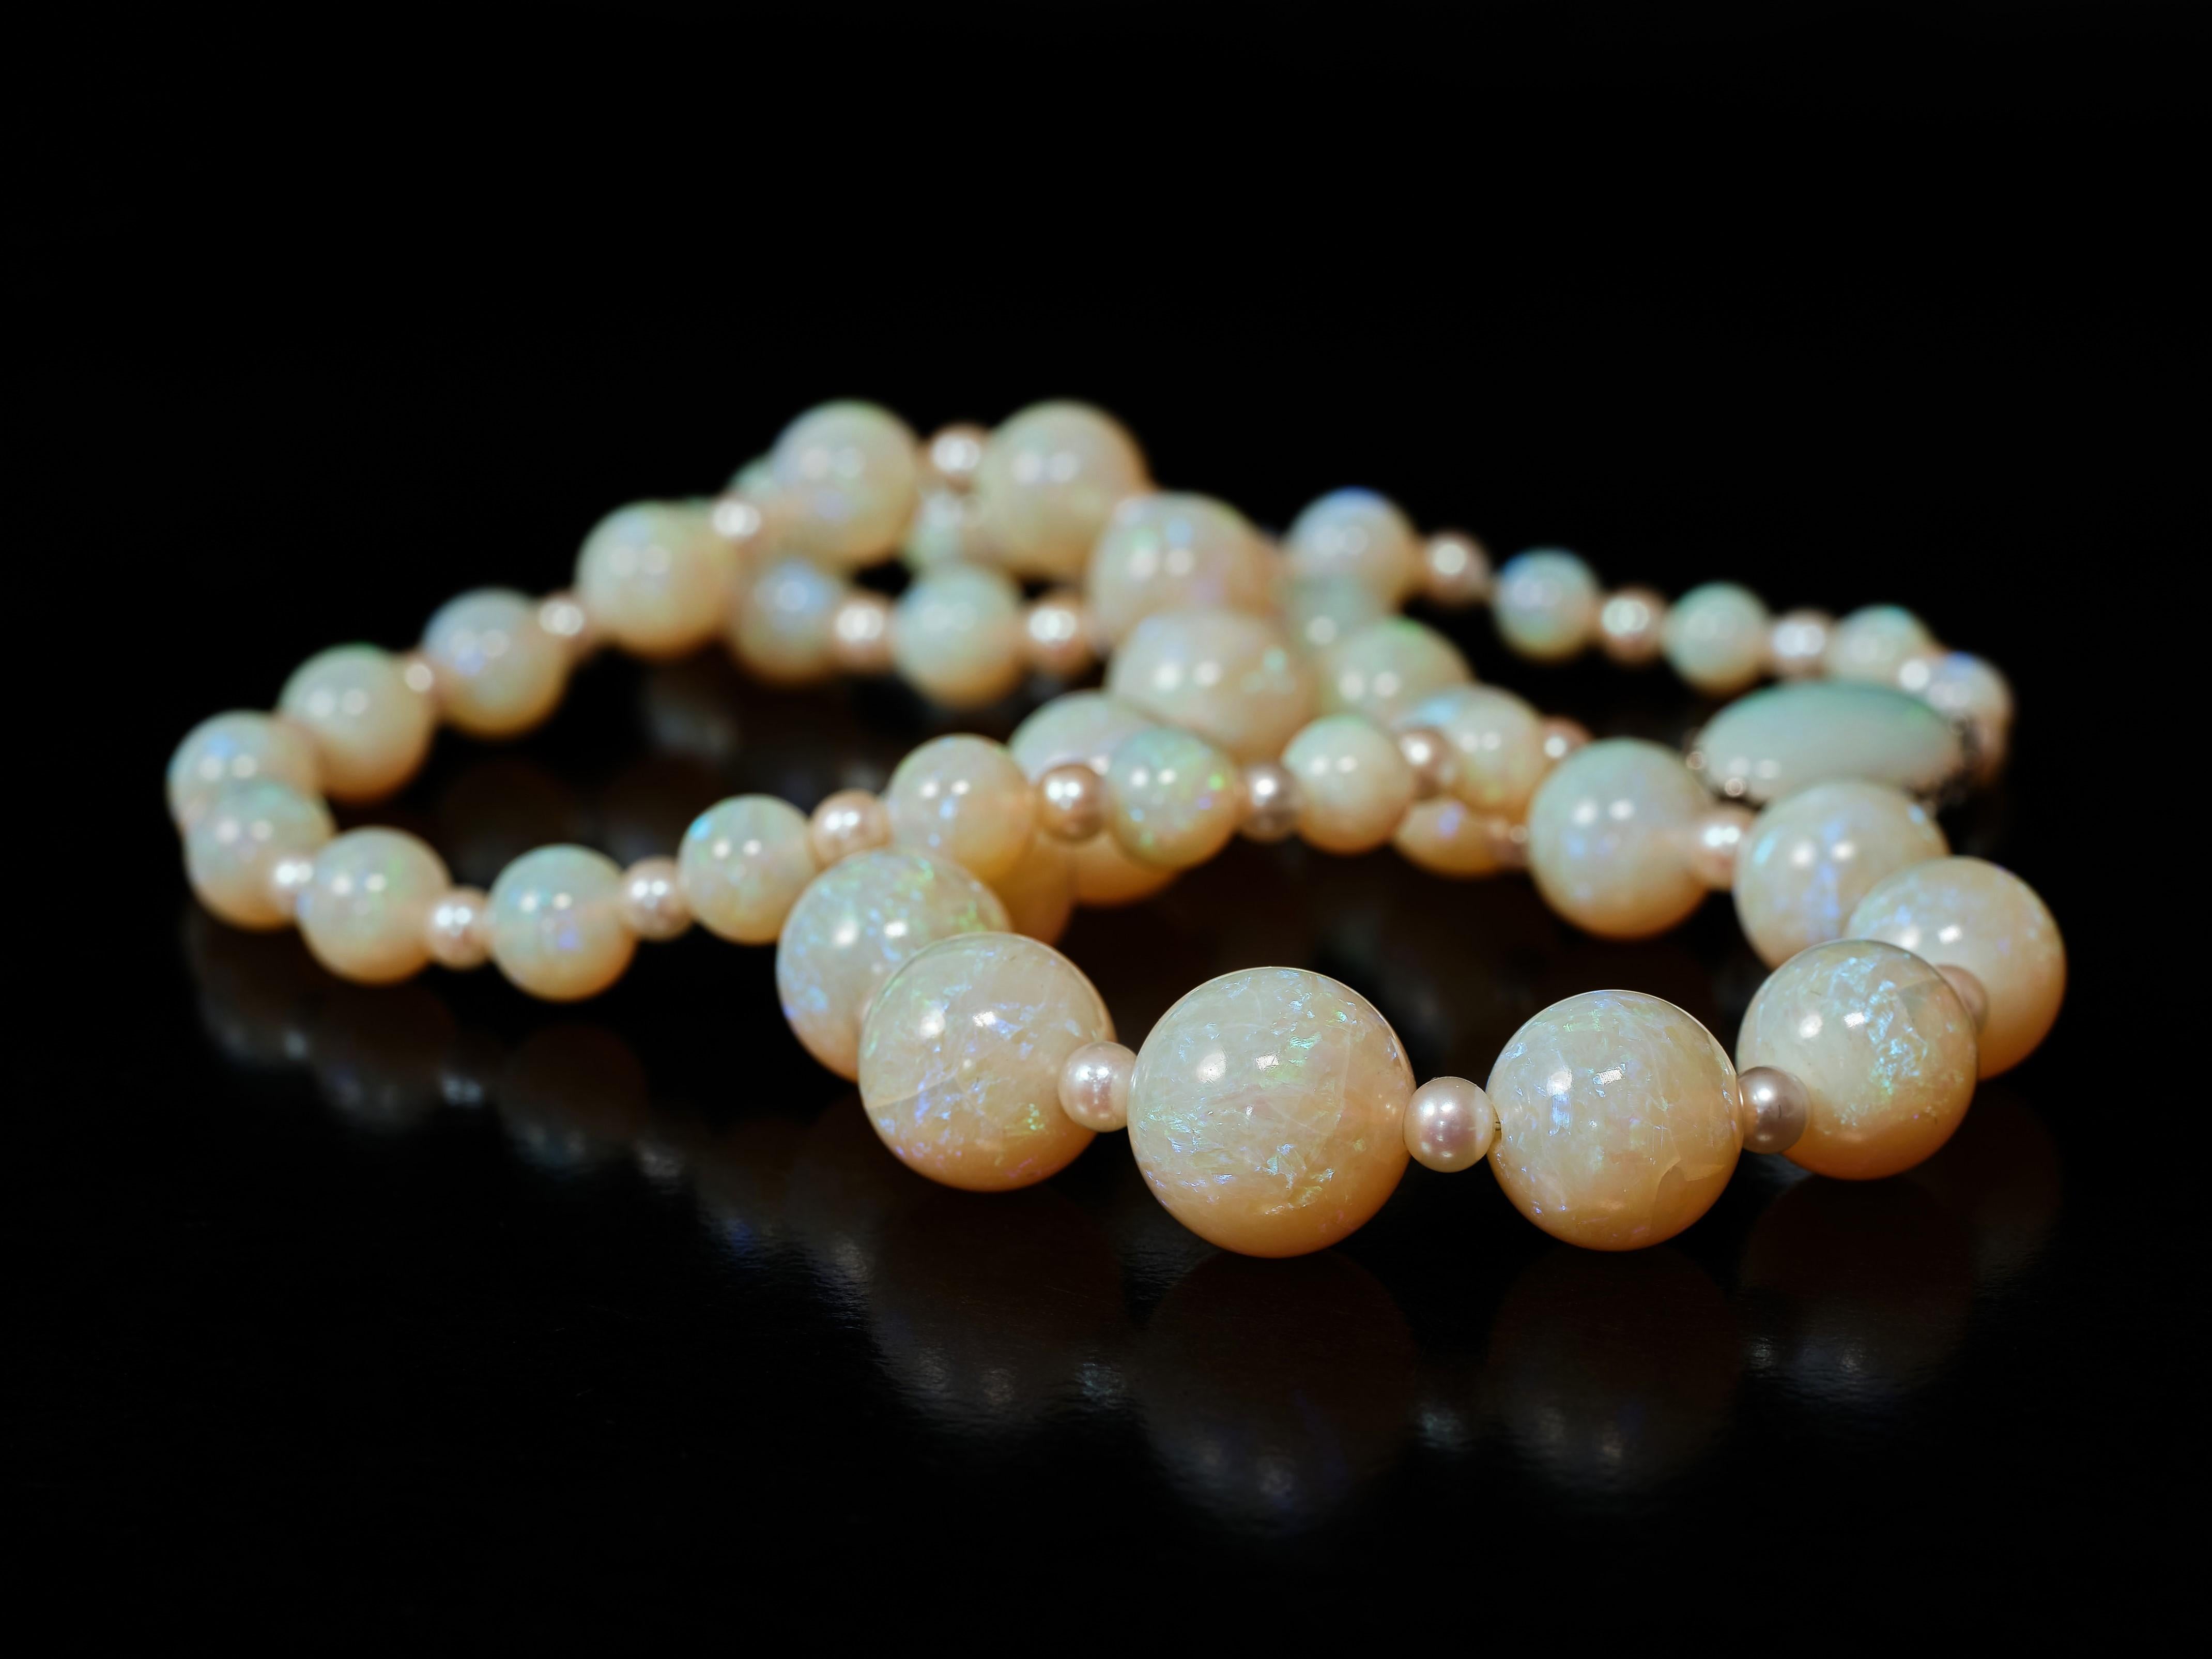 42 wunderschöne, sanft abgestufte, vielfarbige Opalperlen, die mit Blitzen durchsetzt sind, wechseln sich mit kleinen, gleichmäßigen Perlen ab, um diese bezaubernde Halskette zu schaffen. Die Perlen reichen von 5 Millimetern bis zu beeindruckenden